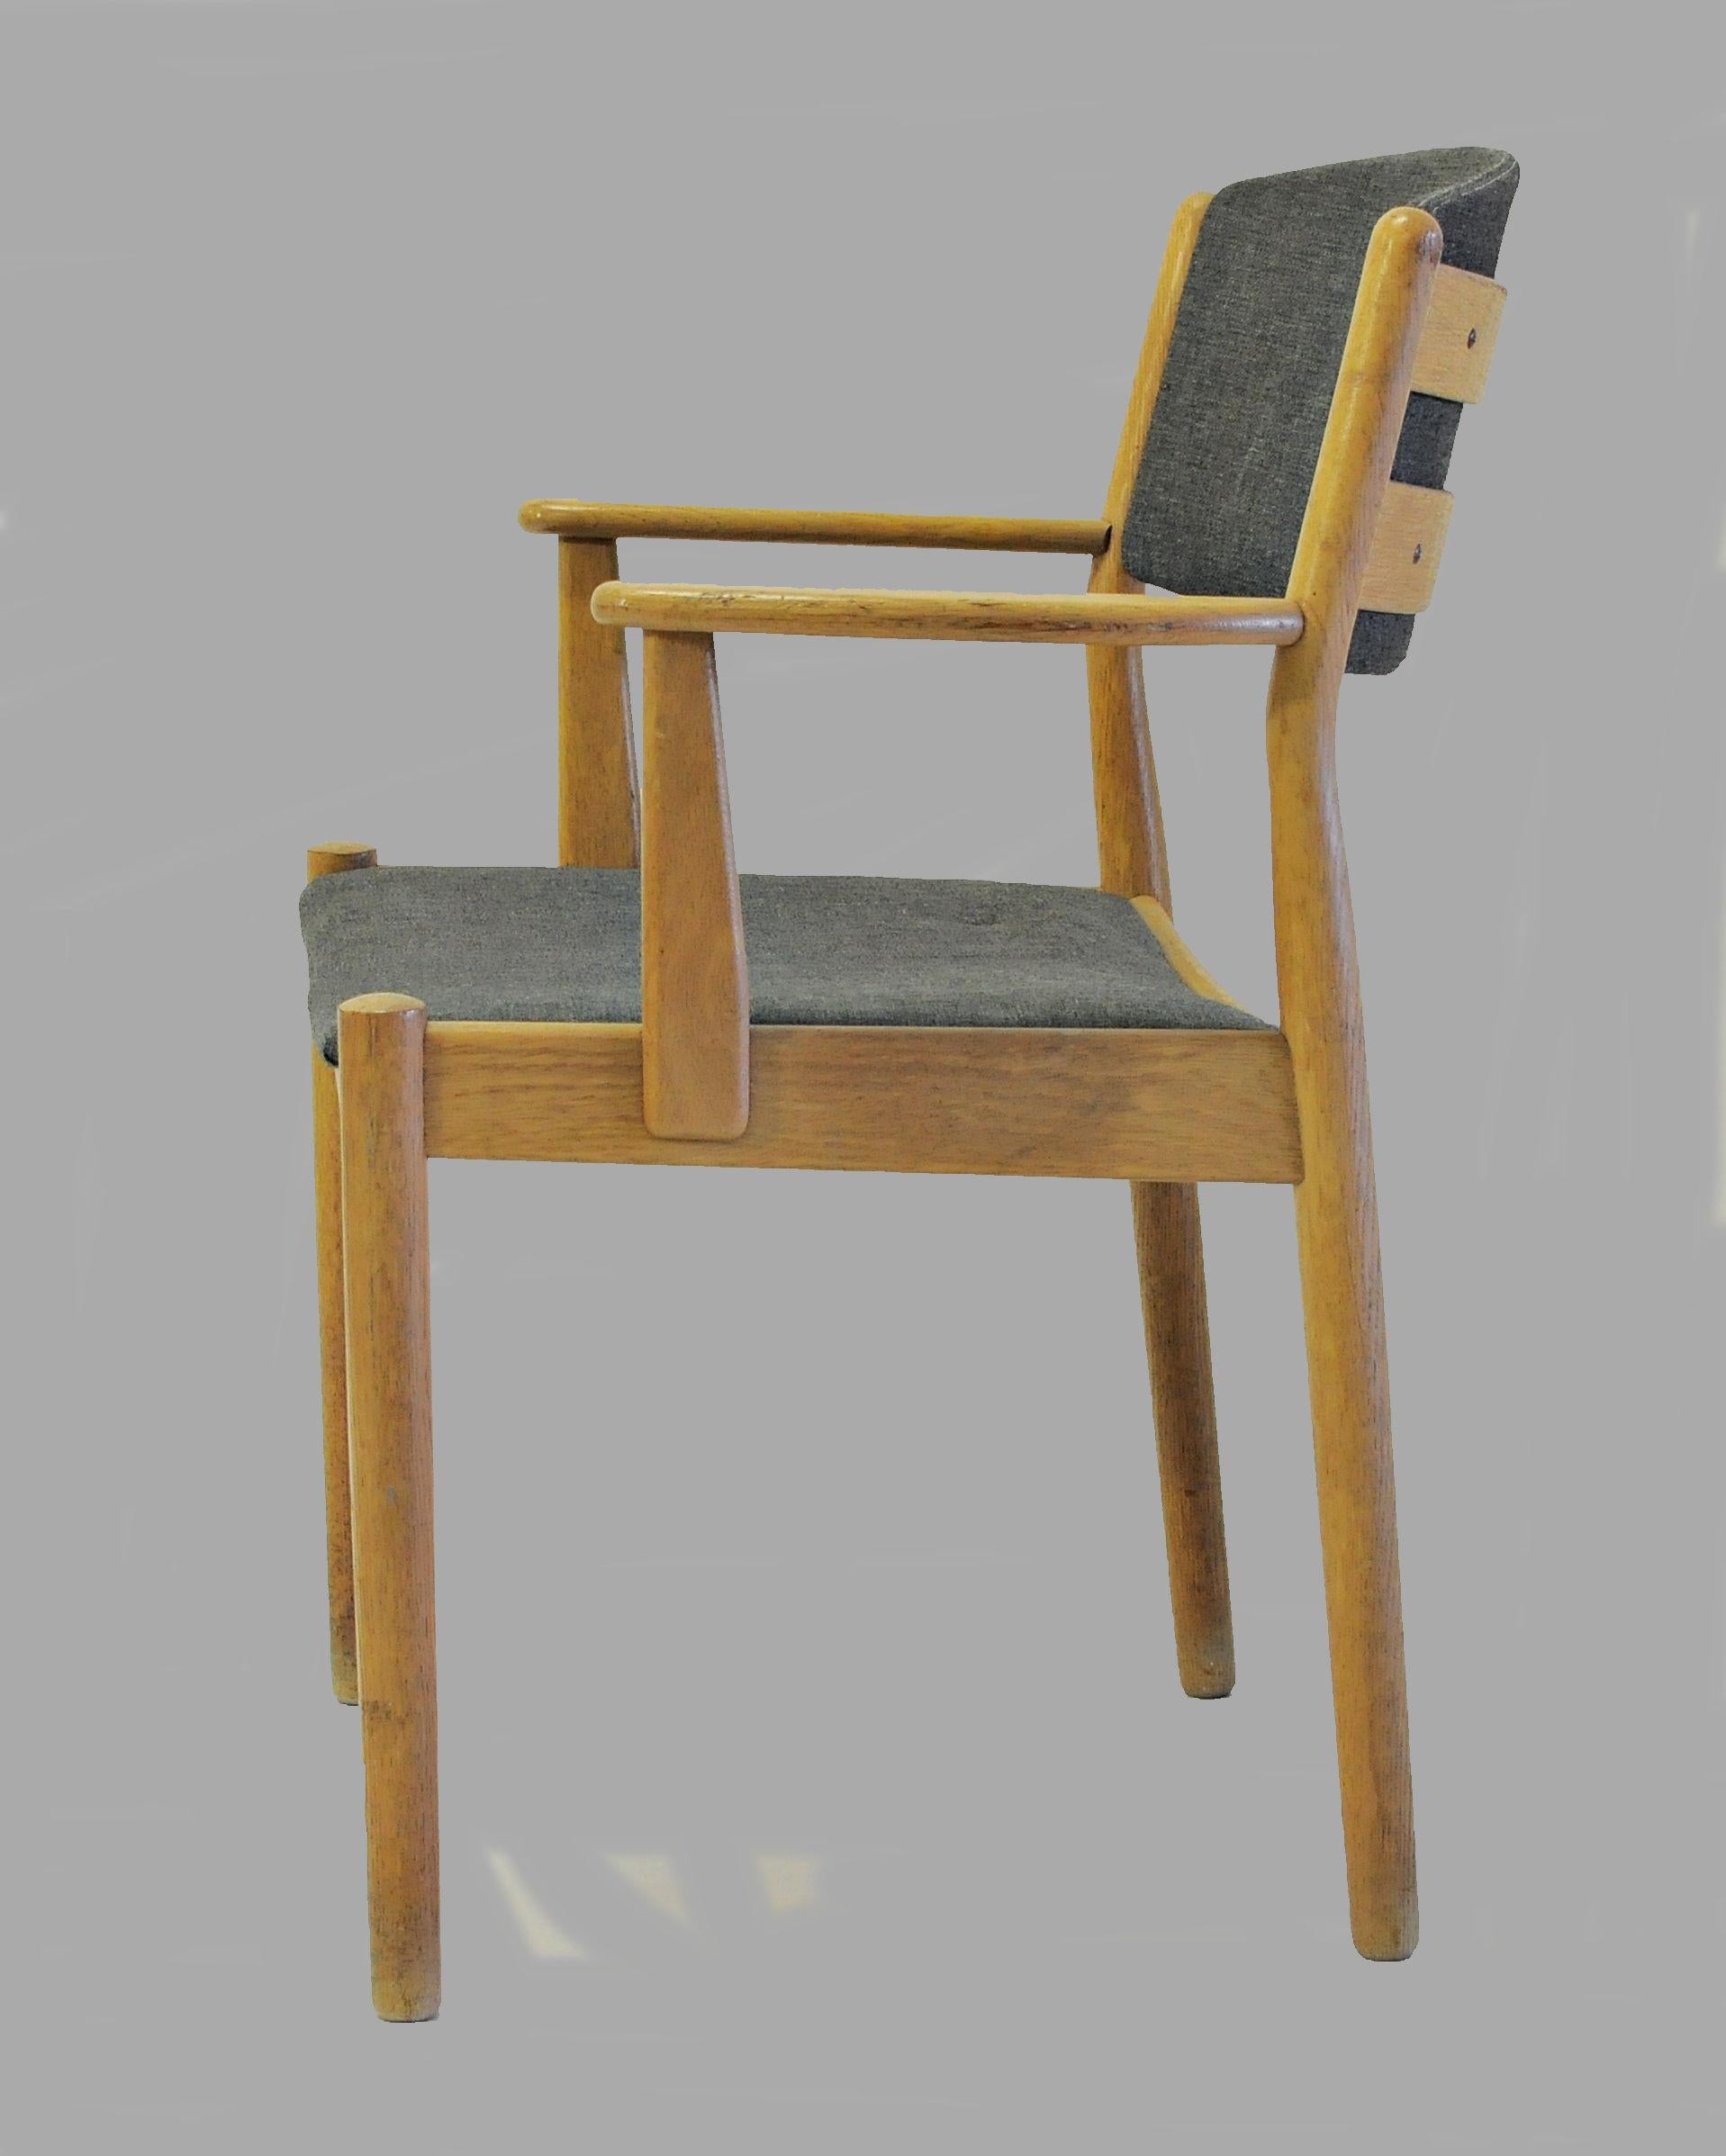 2 Sessel aus Eichenholz, entworfen von Poul Volther für FDB Møbler im Jahr 1954.

Die Stühle wurden von unserem Möbelschreiner überarbeitet, um sicherzustellen, dass sie sich in einem sehr guten Zustand befinden und nur minimale Alters- und